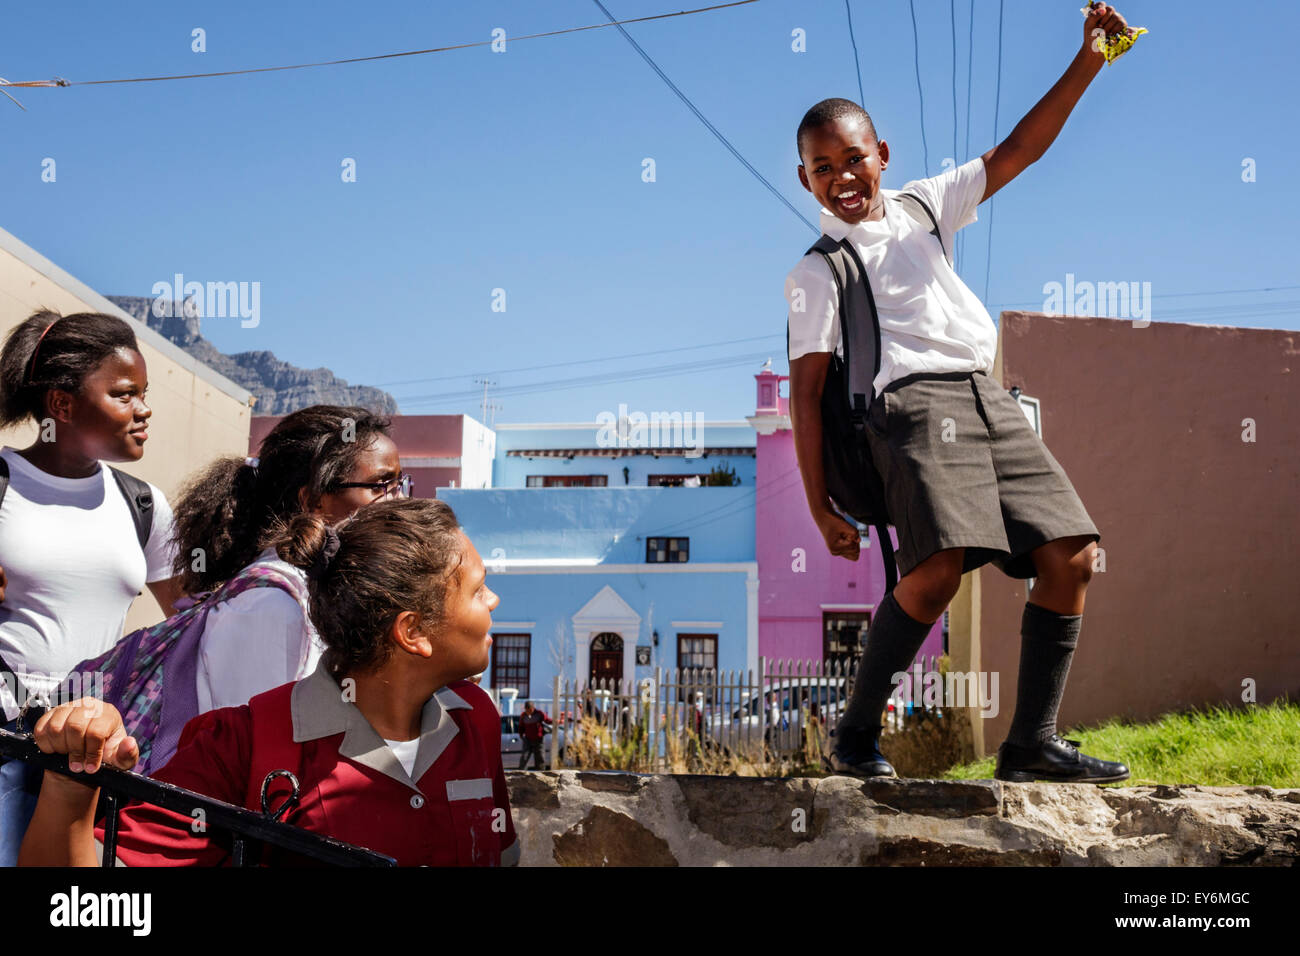 Cape Town Afrique du Sud,Bo-Kaap,Schotsche Kloof,Malay Quarter,musulman,quartier,Noir étudiant élèves filles,jeune,femme enfants homme Banque D'Images